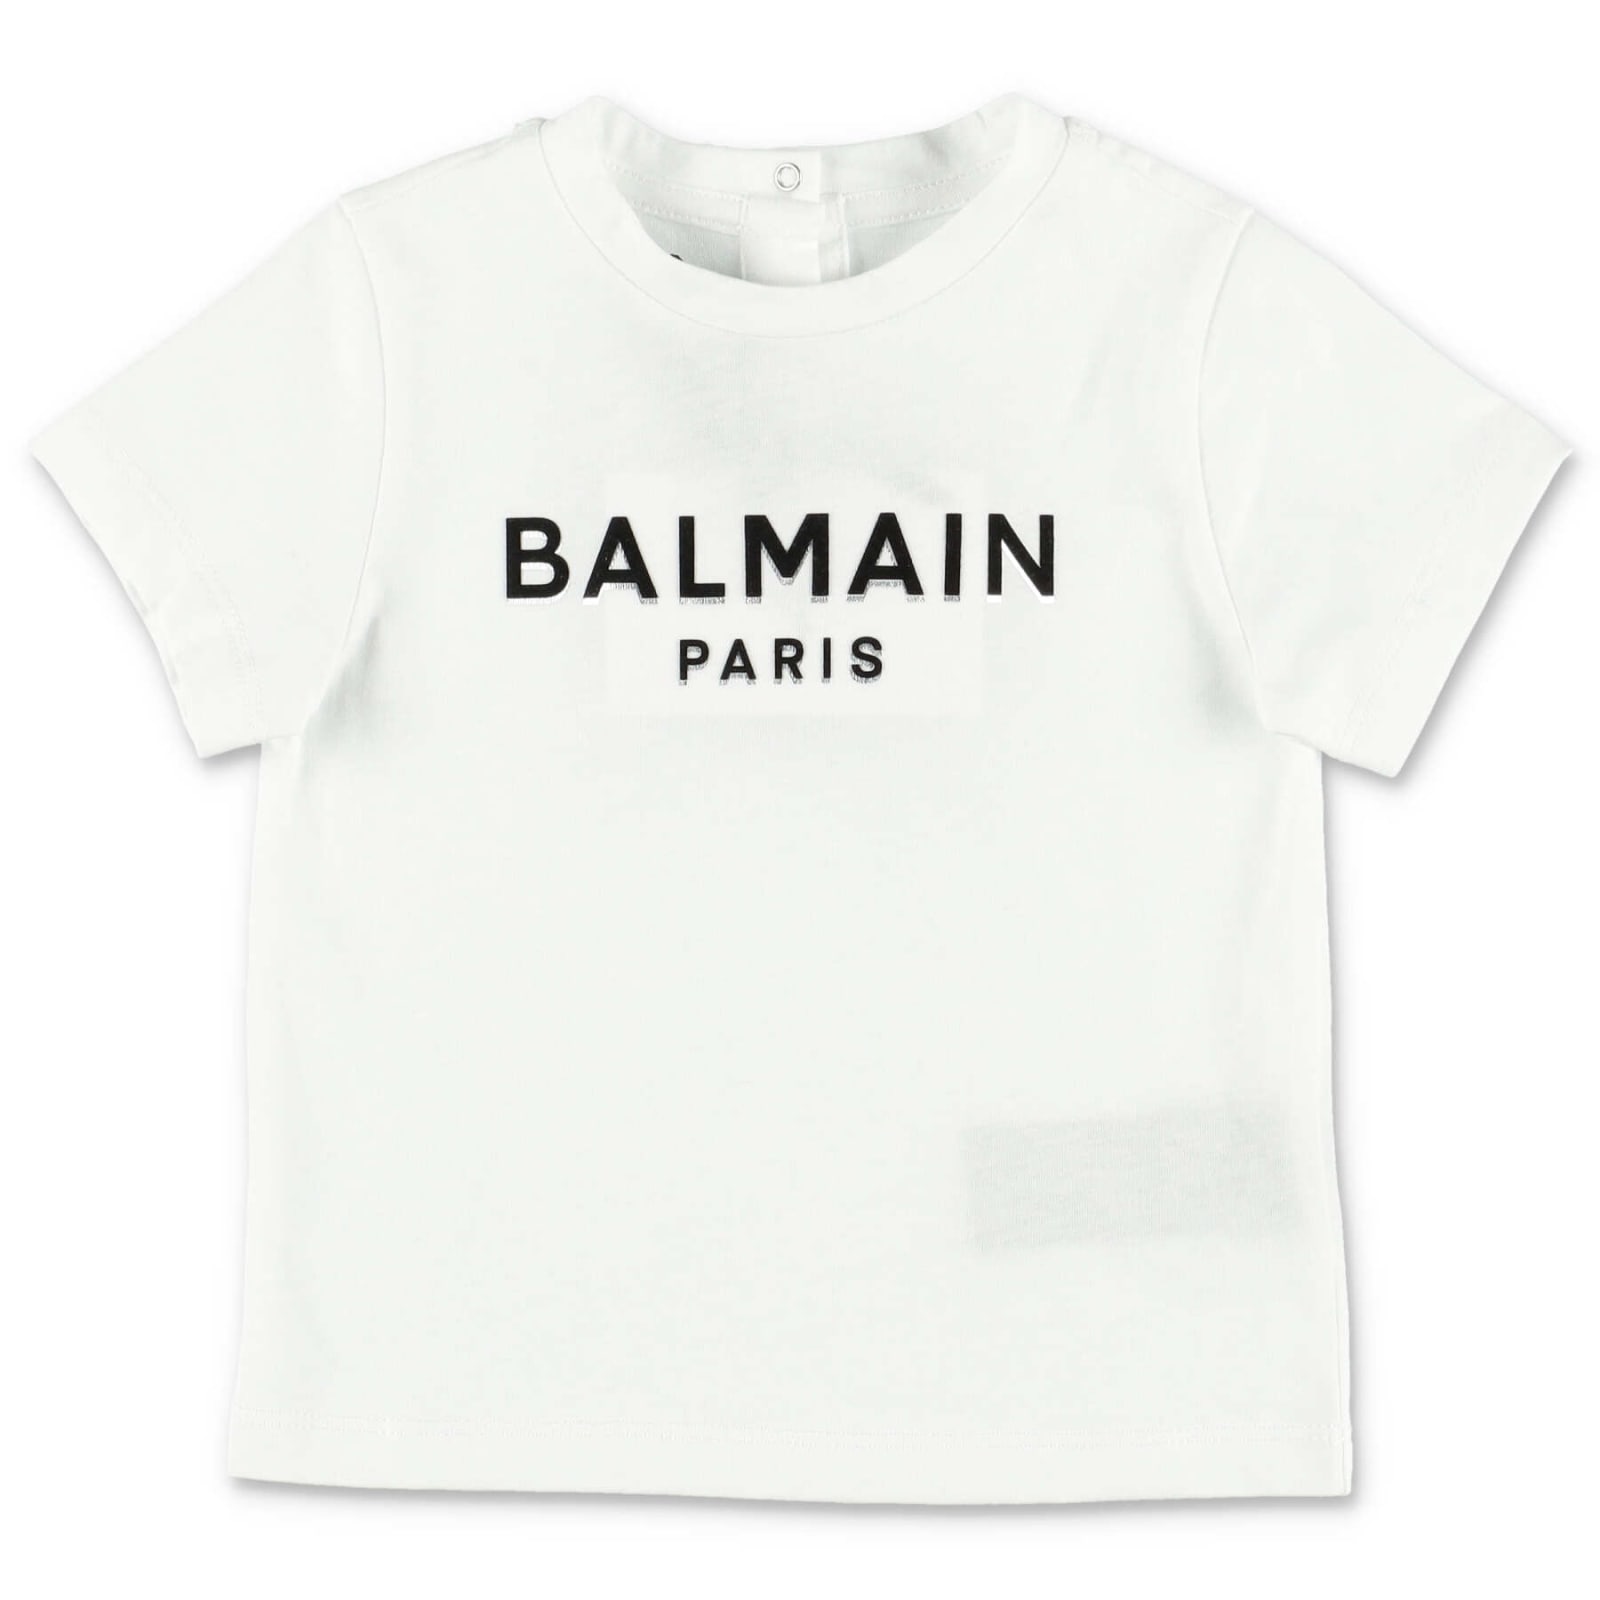 BALMAIN BALMAIN T-SHIRT BIANCA IN JERSEY DI COTONE BABY BOY